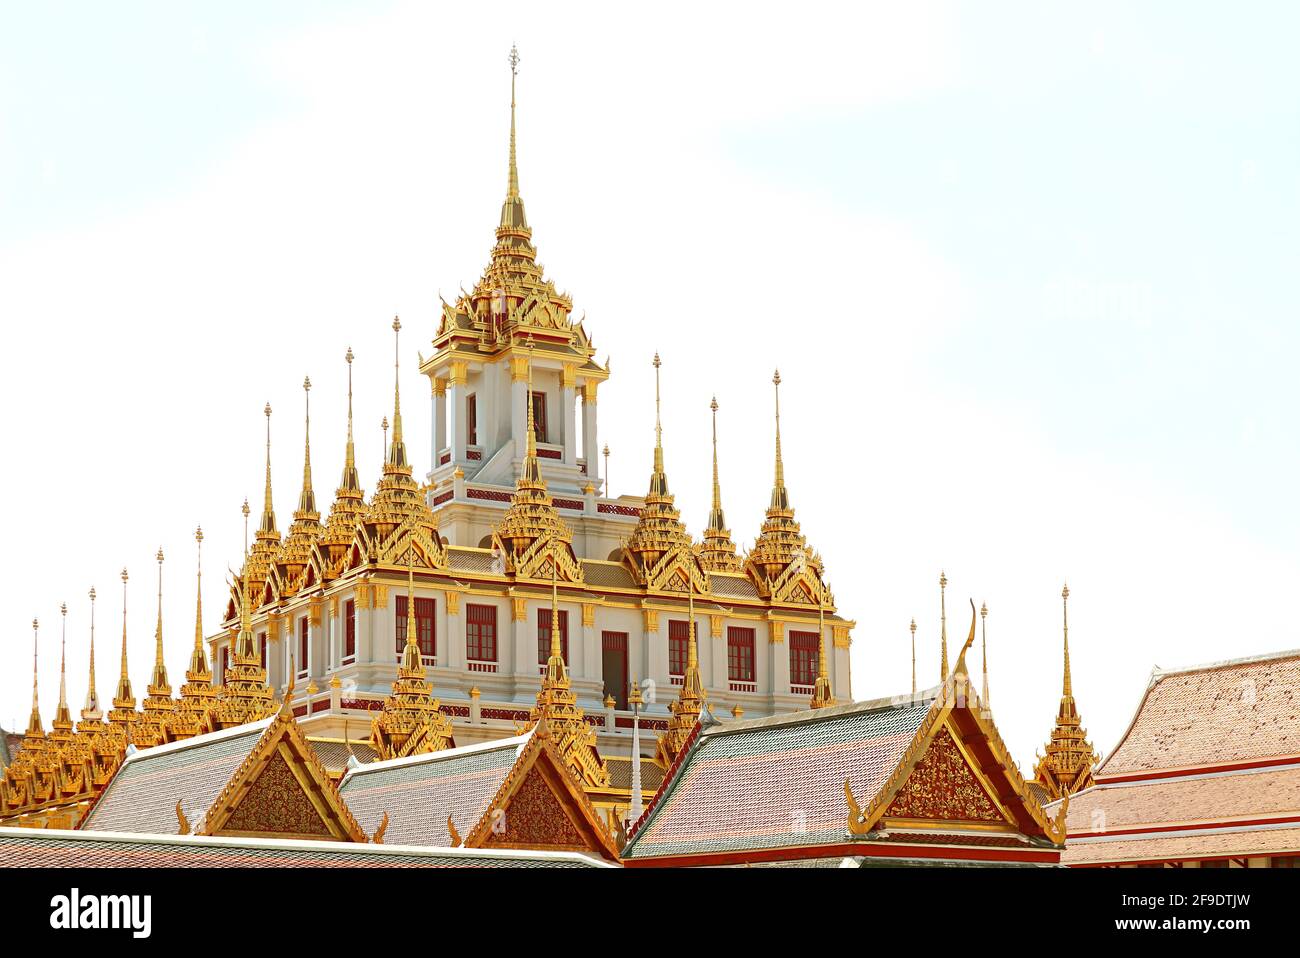 Fantastique Golden Spires de l'historique Loha Prasat (château de fer) à l'intérieur du temple Wat Ratchanatdaram situé dans la vieille ville de Bangkok, Thaïlande Banque D'Images